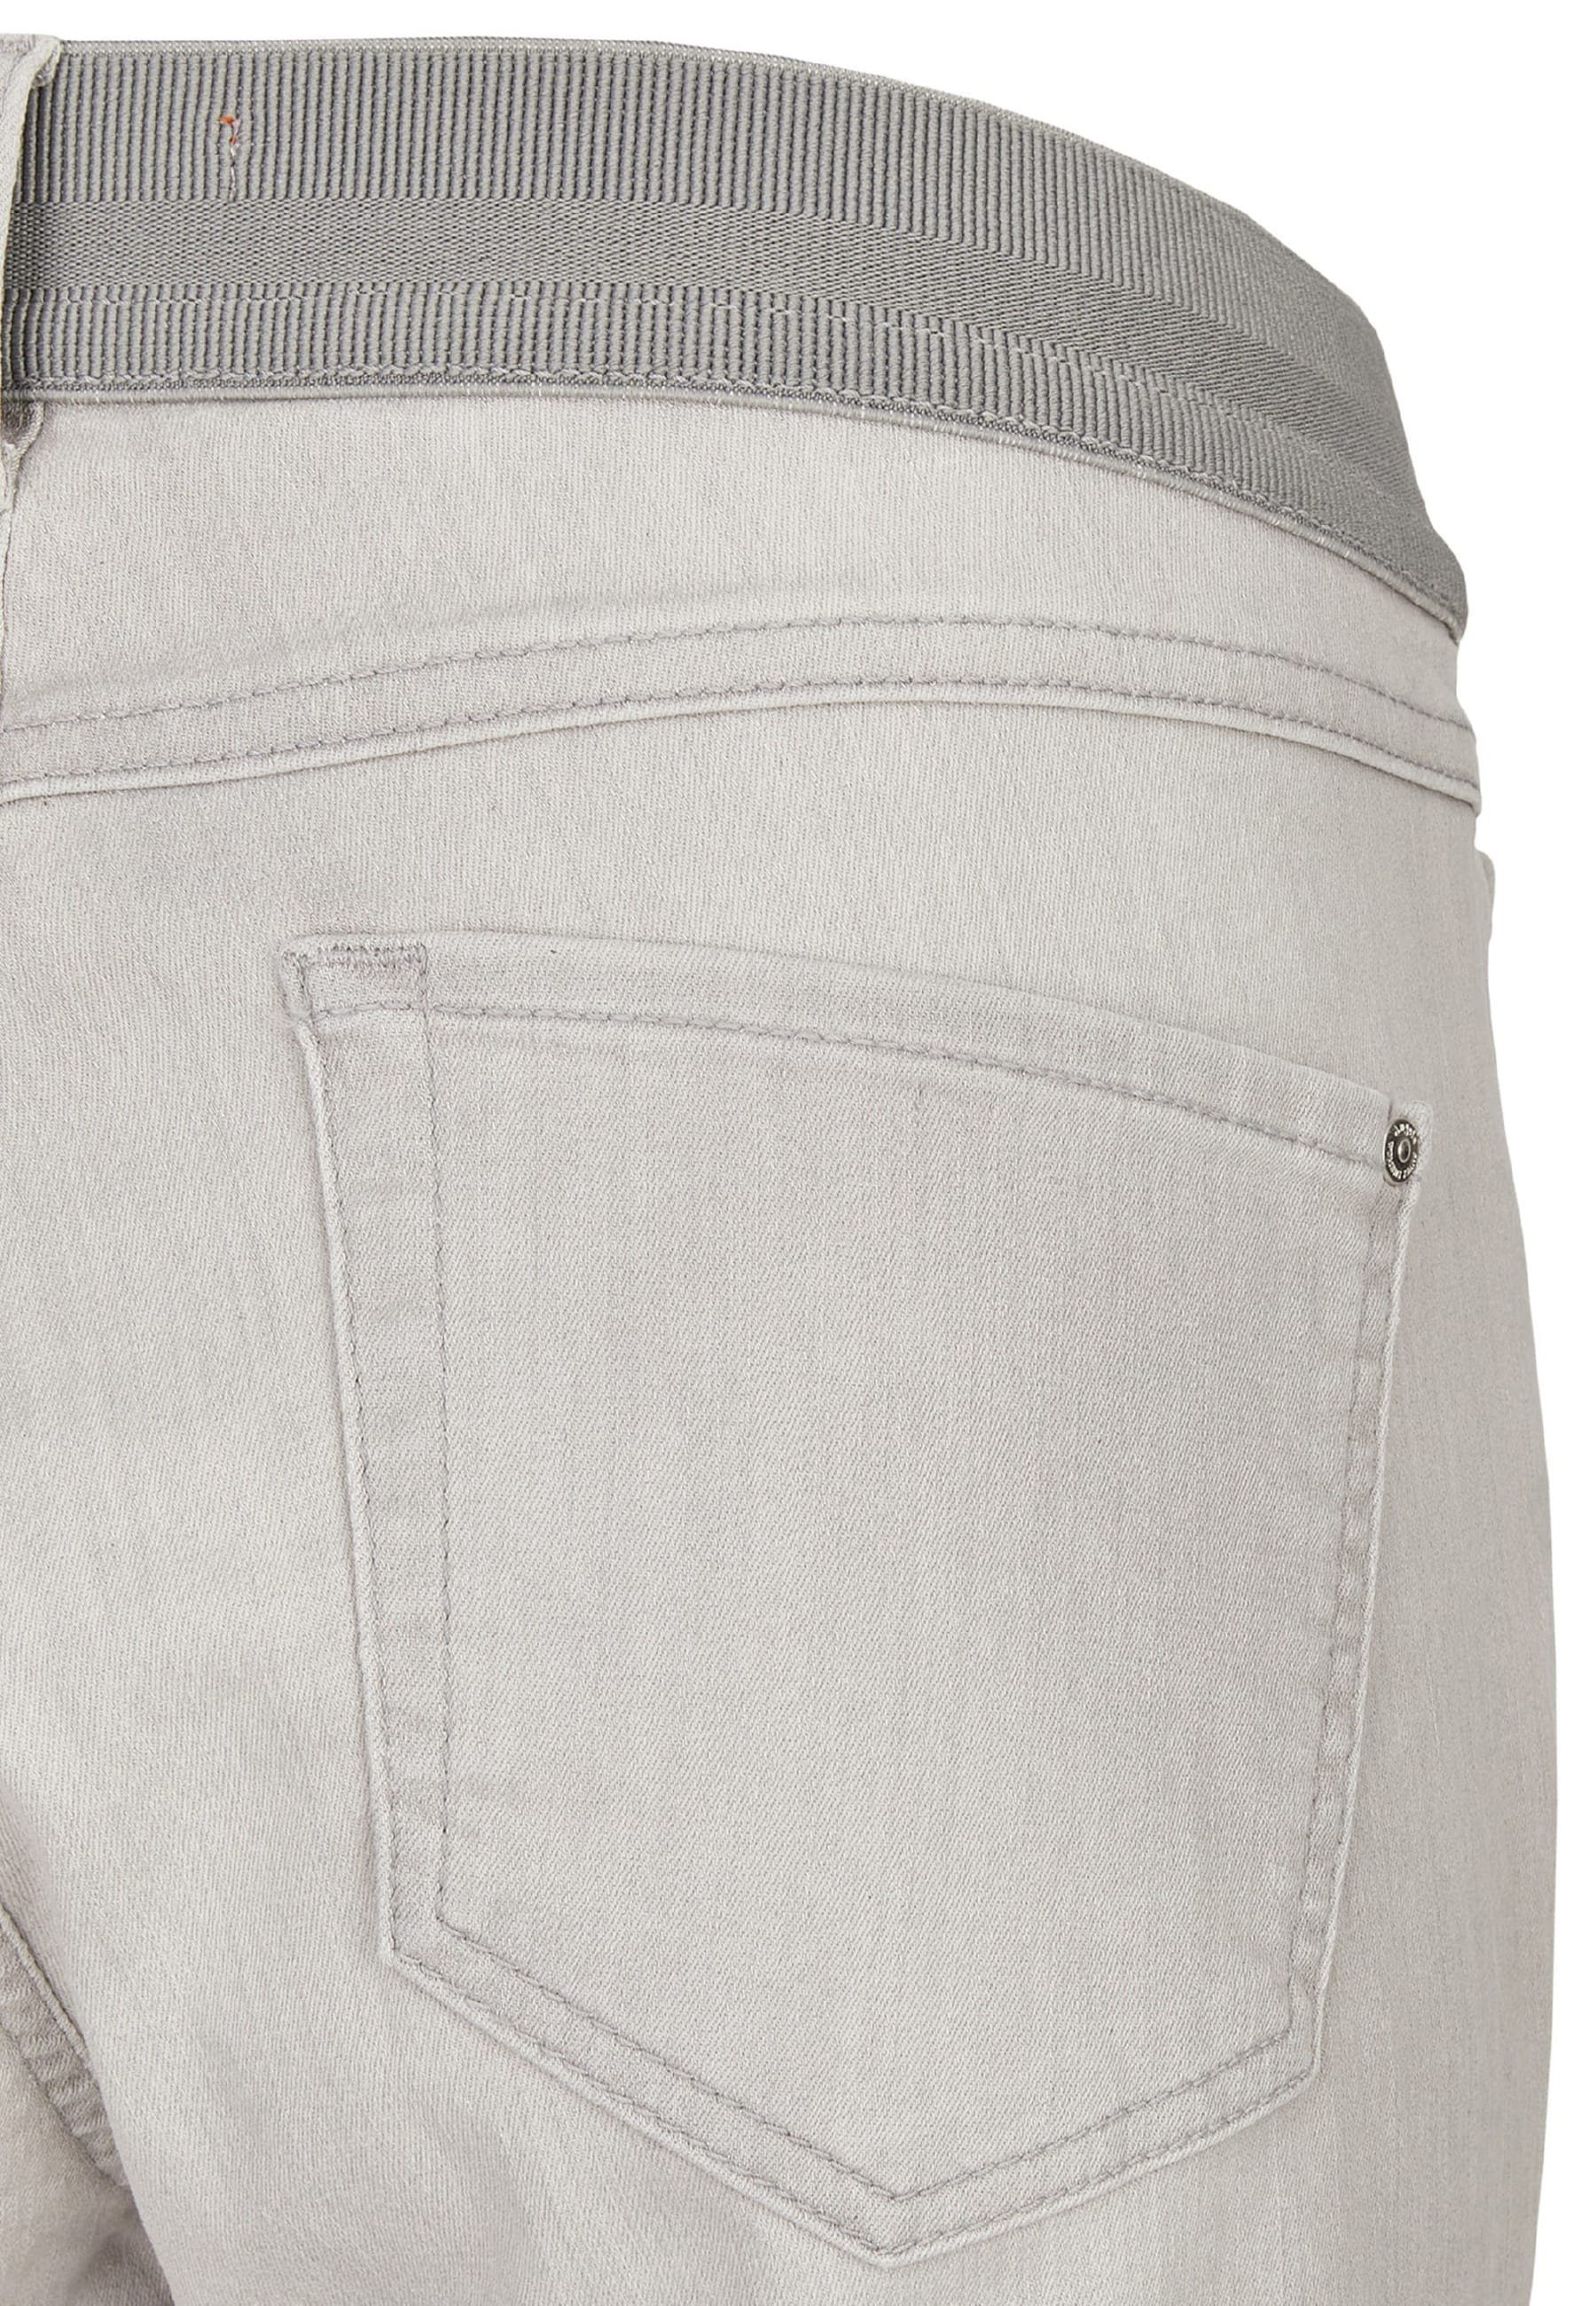 Kurze Jeans hellgrau mit Design klassischem ANGELS Dehnbund-Jeans Capri Onesize